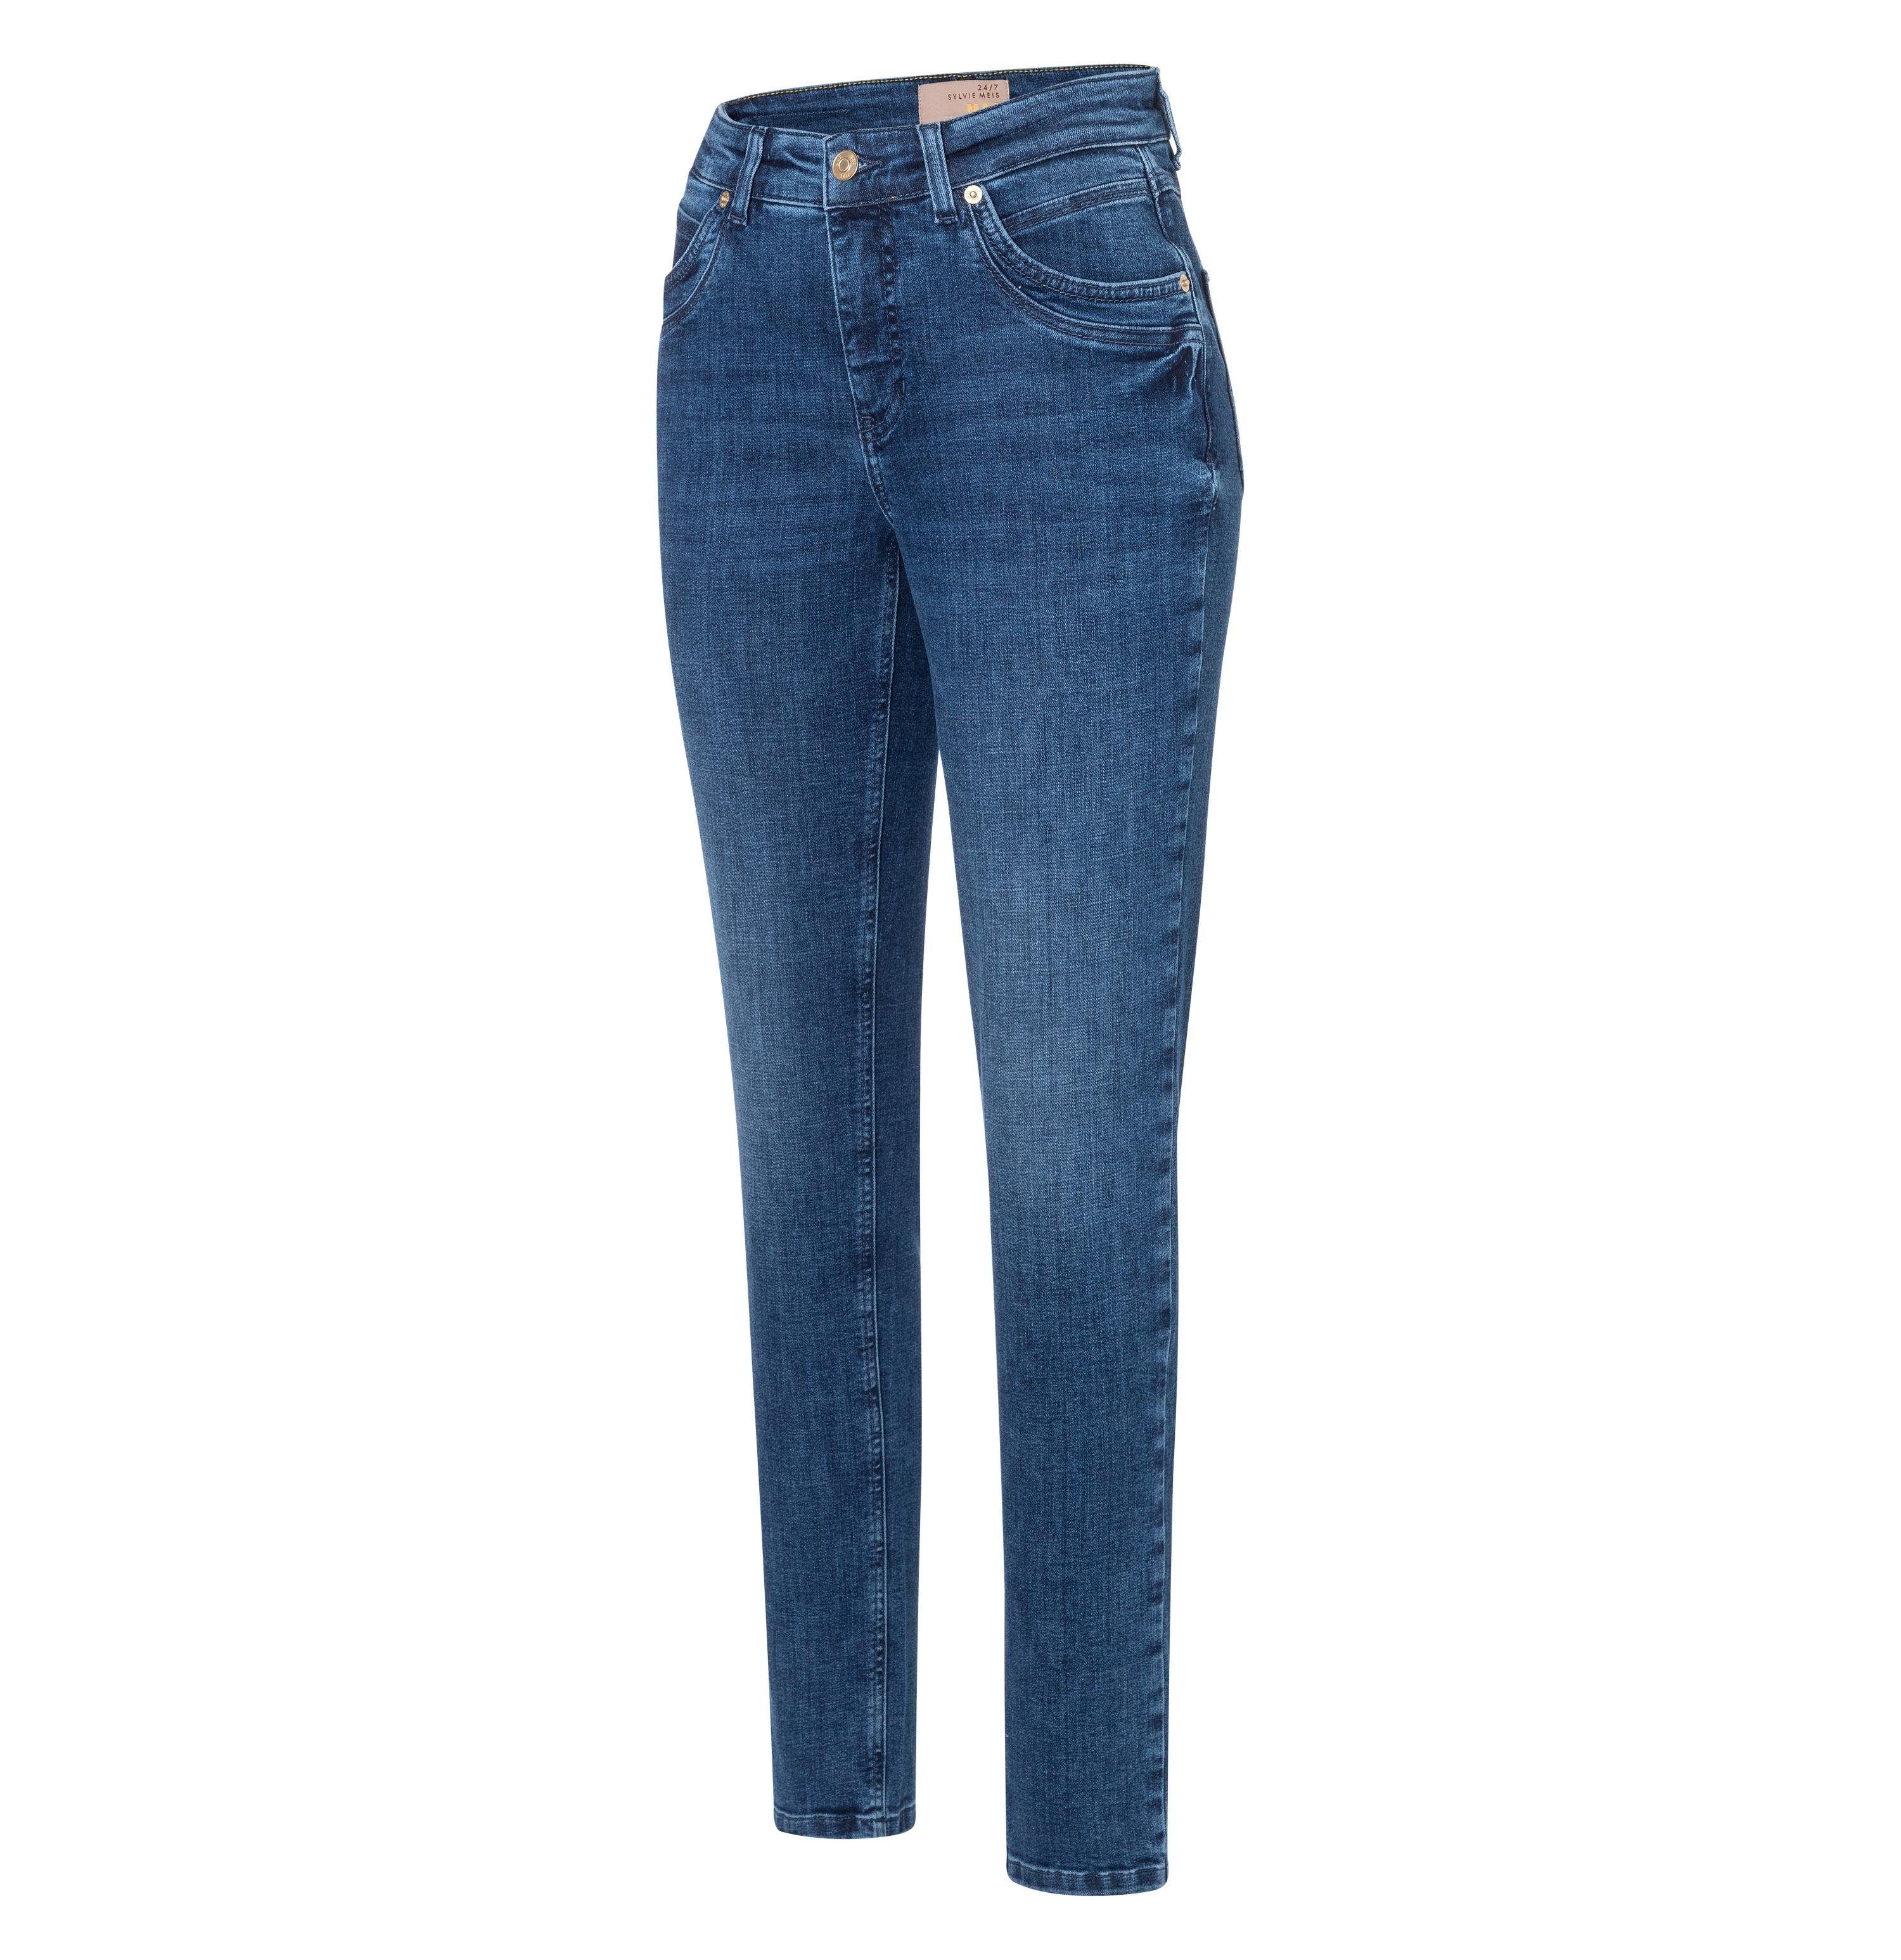 Damen Jeans MAC Stretch-Jeans MAC MEL dark blue modern wash 2620-90-0389L D696